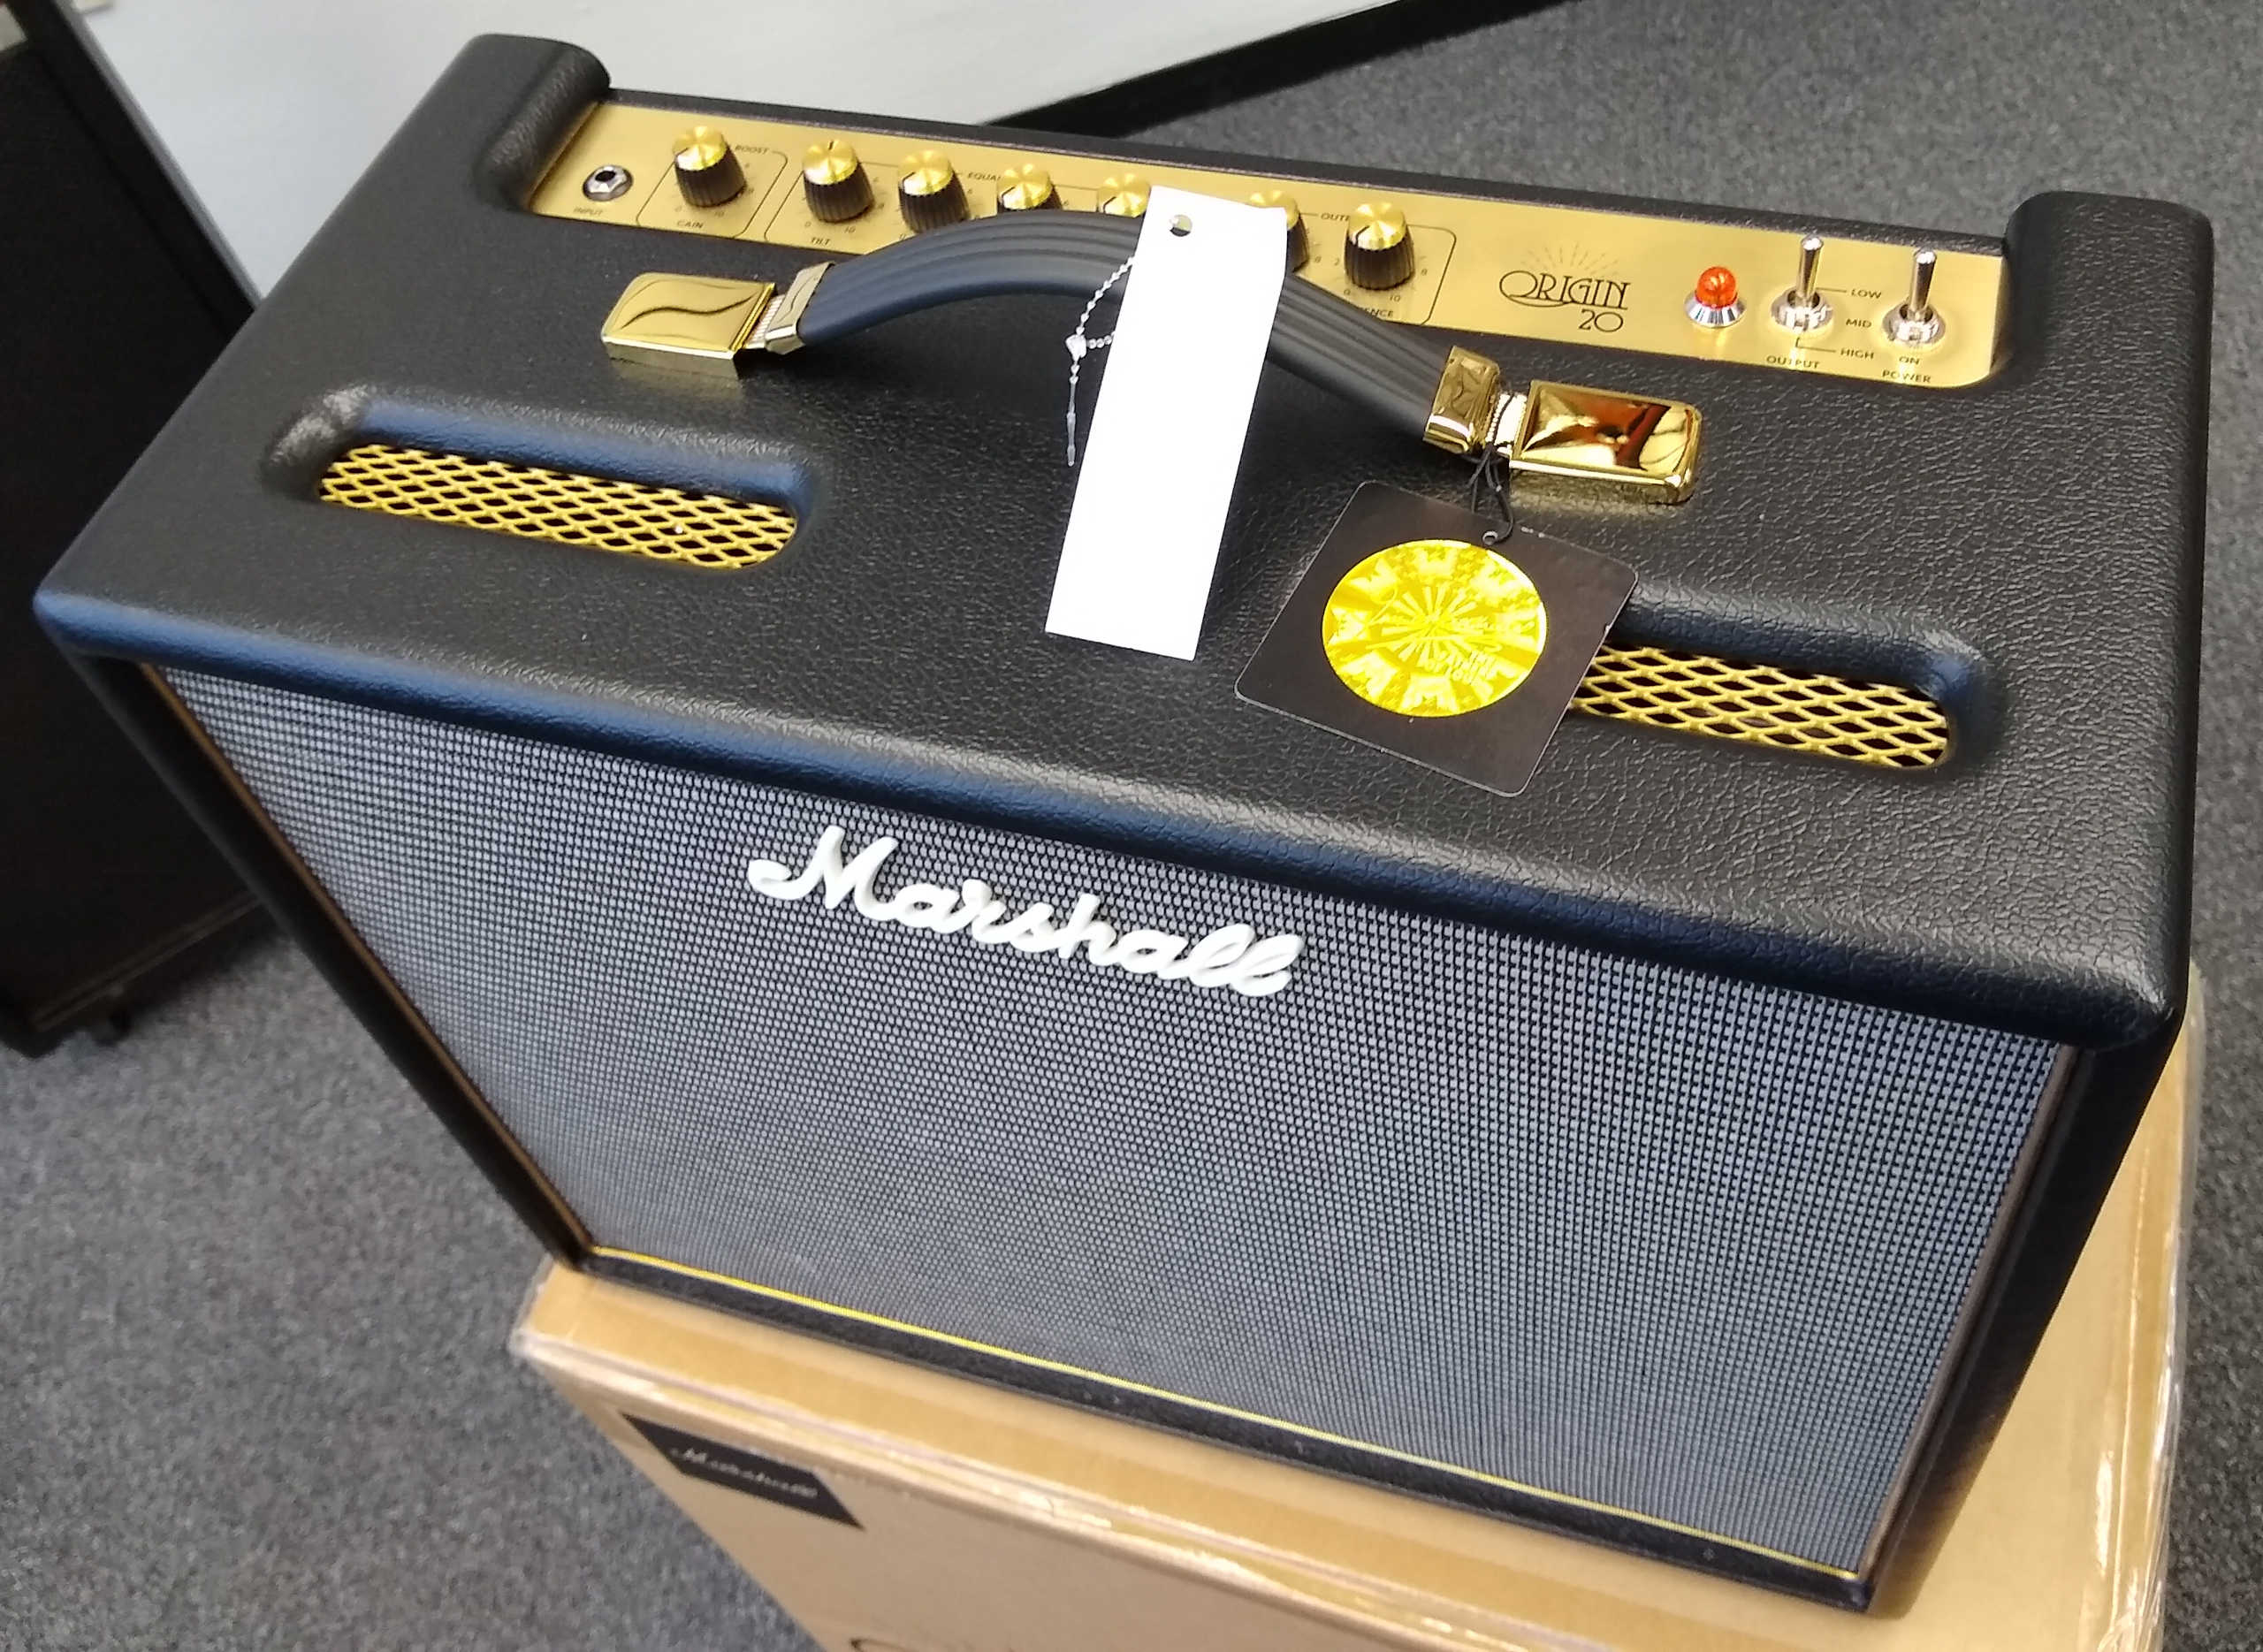 Marshall Origin 20 Amplifier